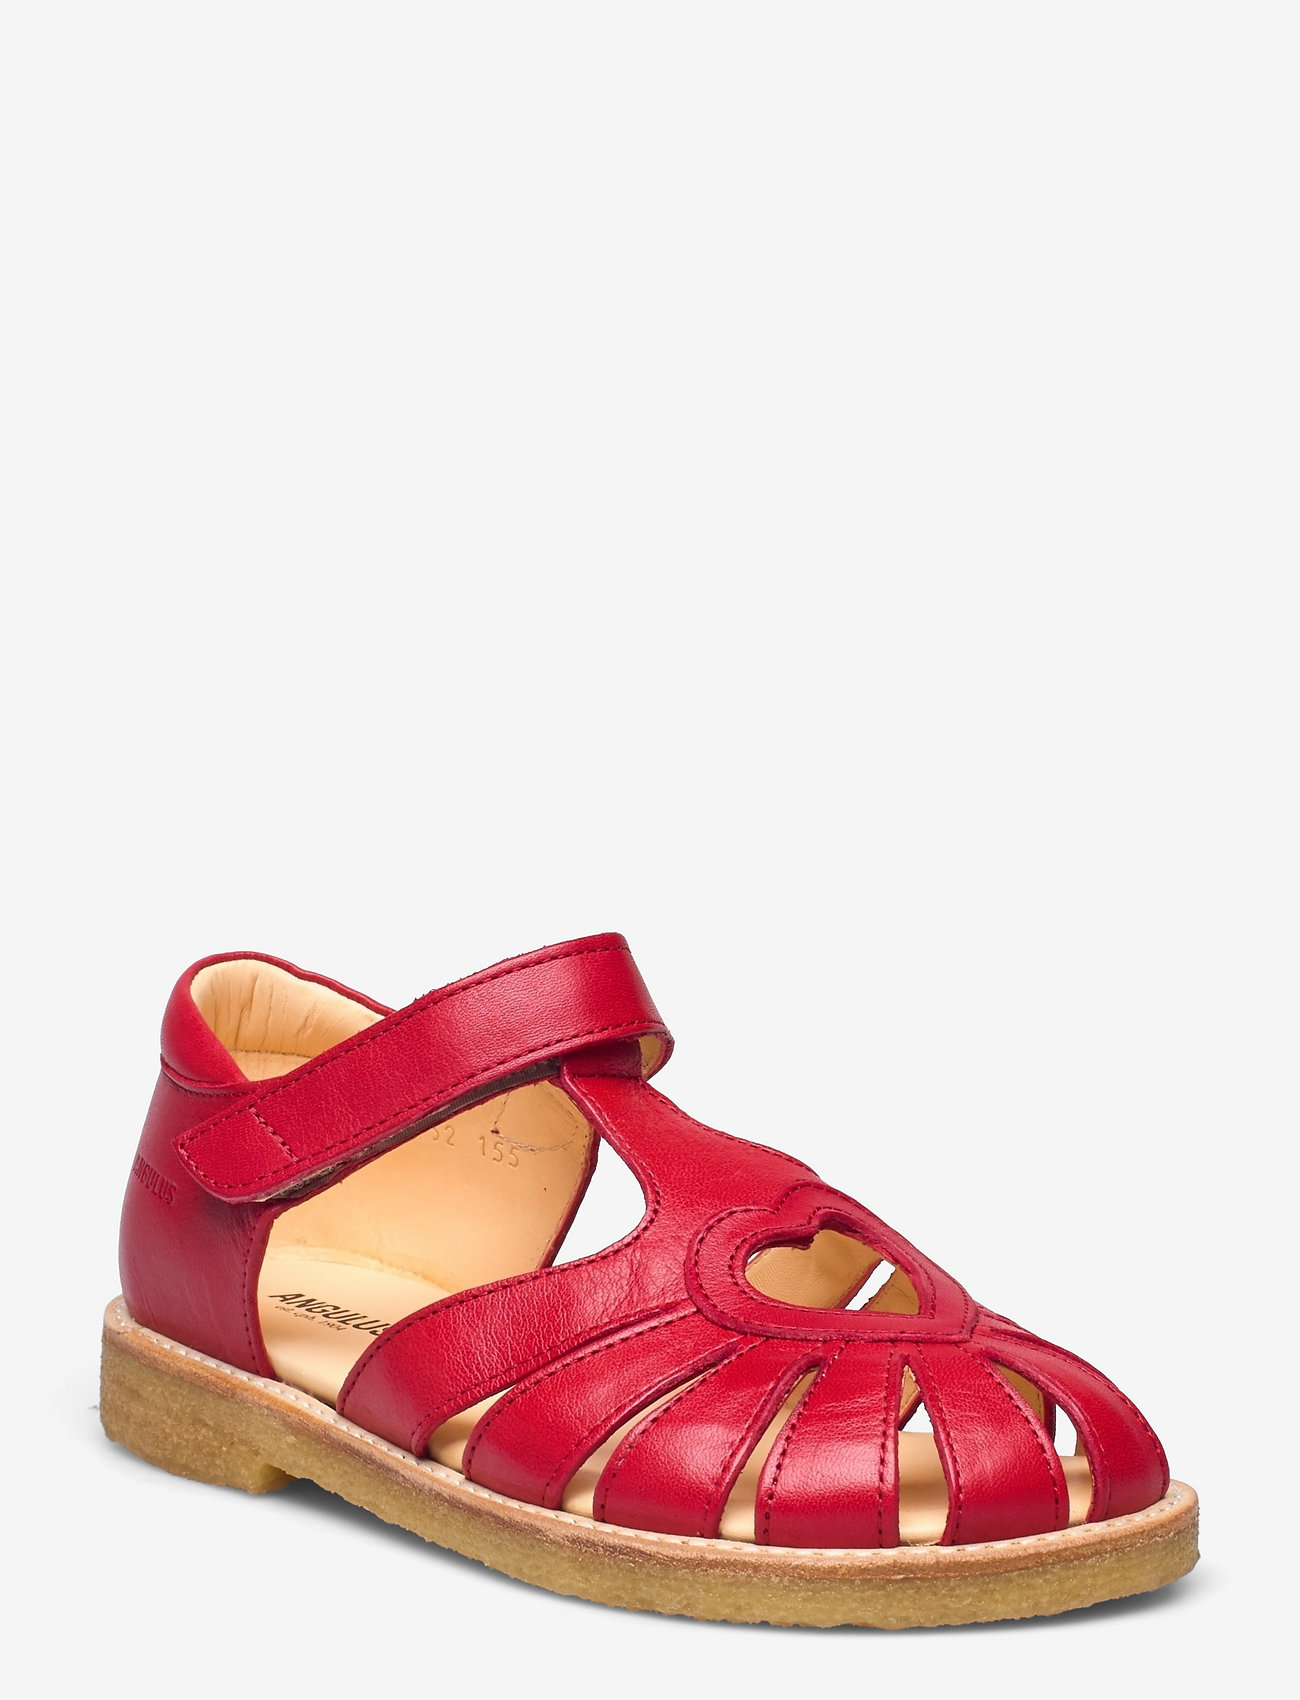 ANGULUS - Sandals - flat - closed toe -  - sandaler med rem - 1412 red - 0